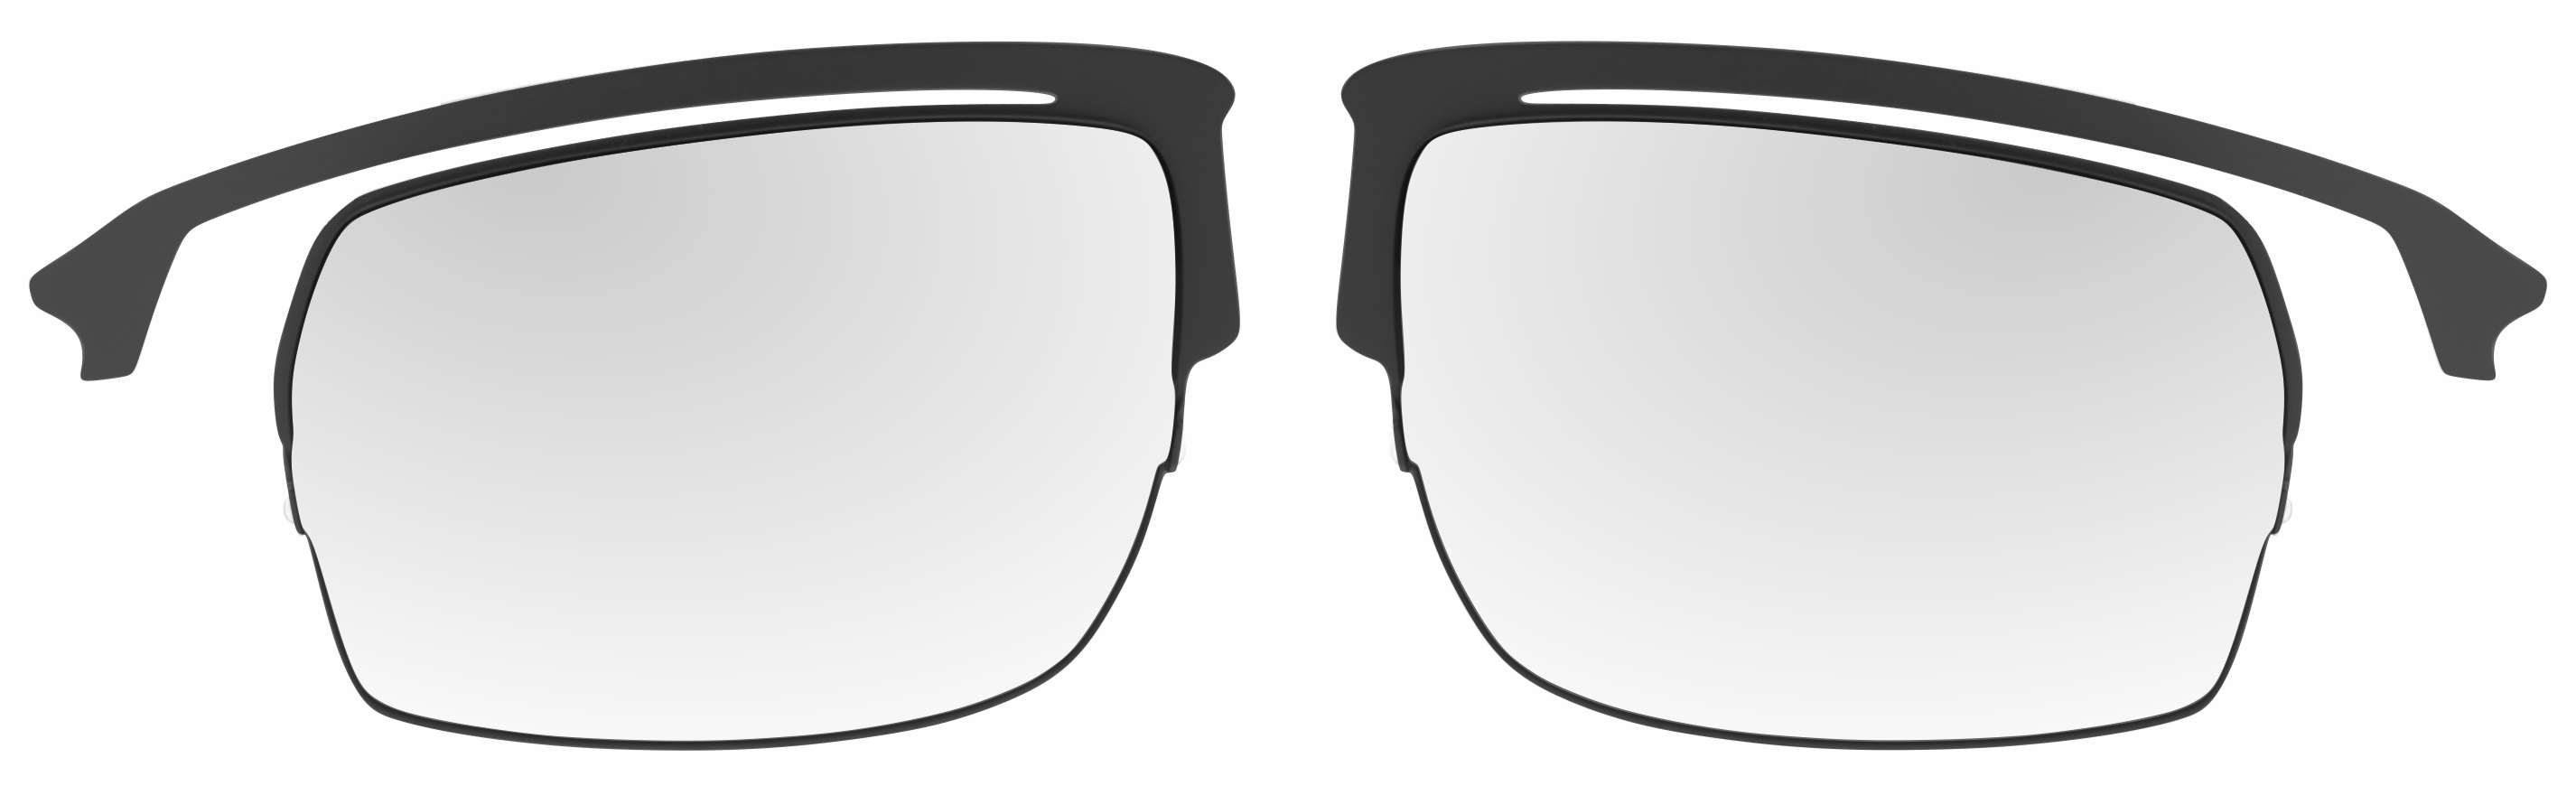 Optická redukce do rámu slunečních sportovních brýlí R2 Racer AT063 - kovová